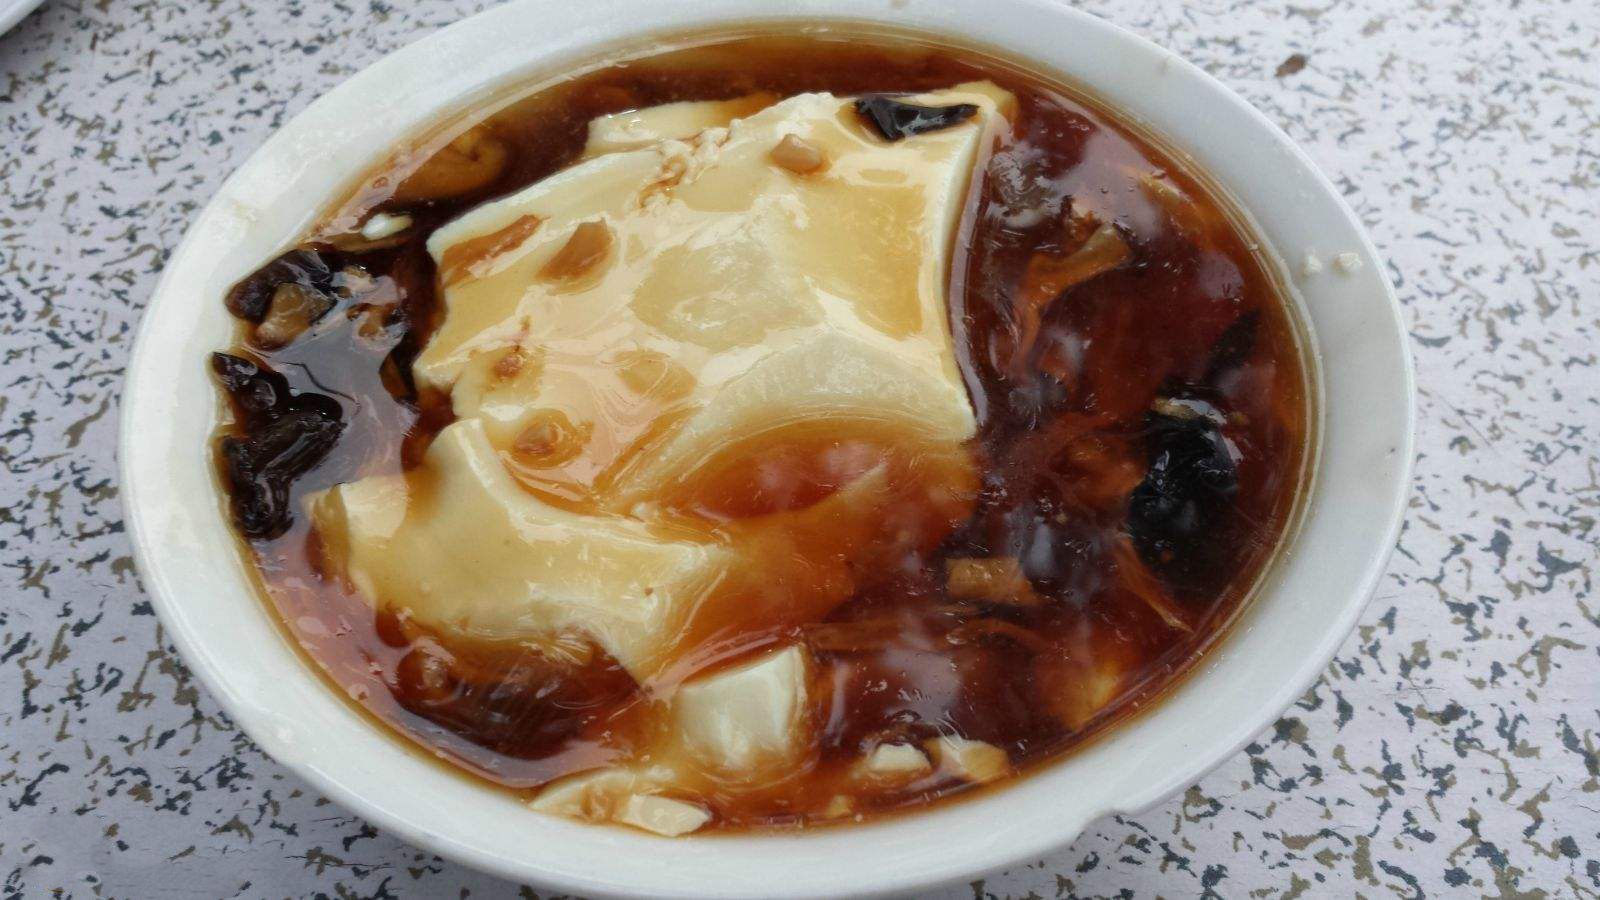 豆腐脑——南甜北咸在南方,豆腐花更多偏向于甜点形式,加入糖浆或砂糖